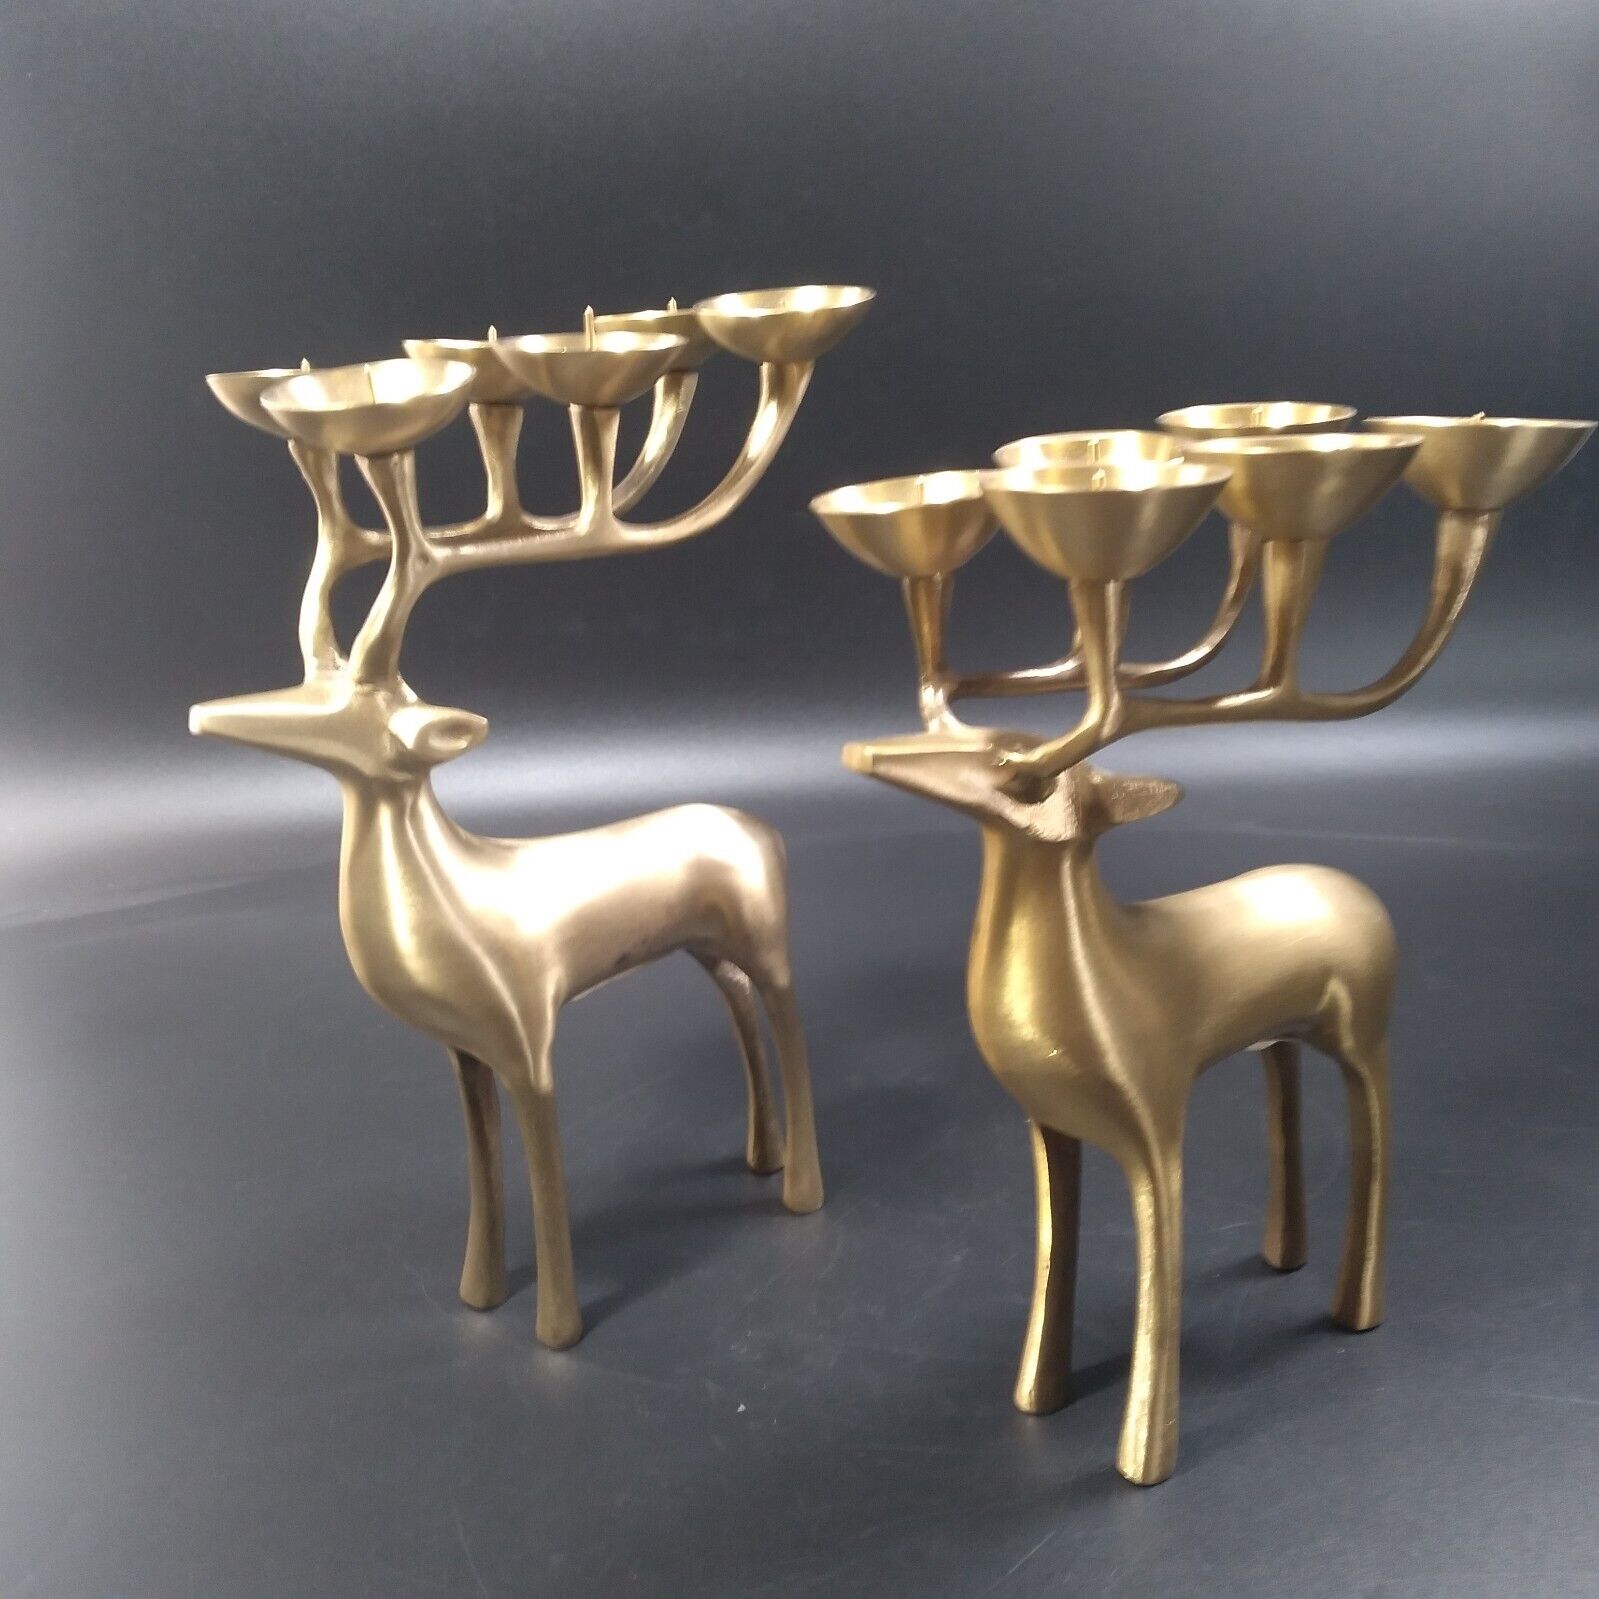 2 Vintage Brass Deer Reindeer Candle Holders Antlers with 6 Pins Holders Each